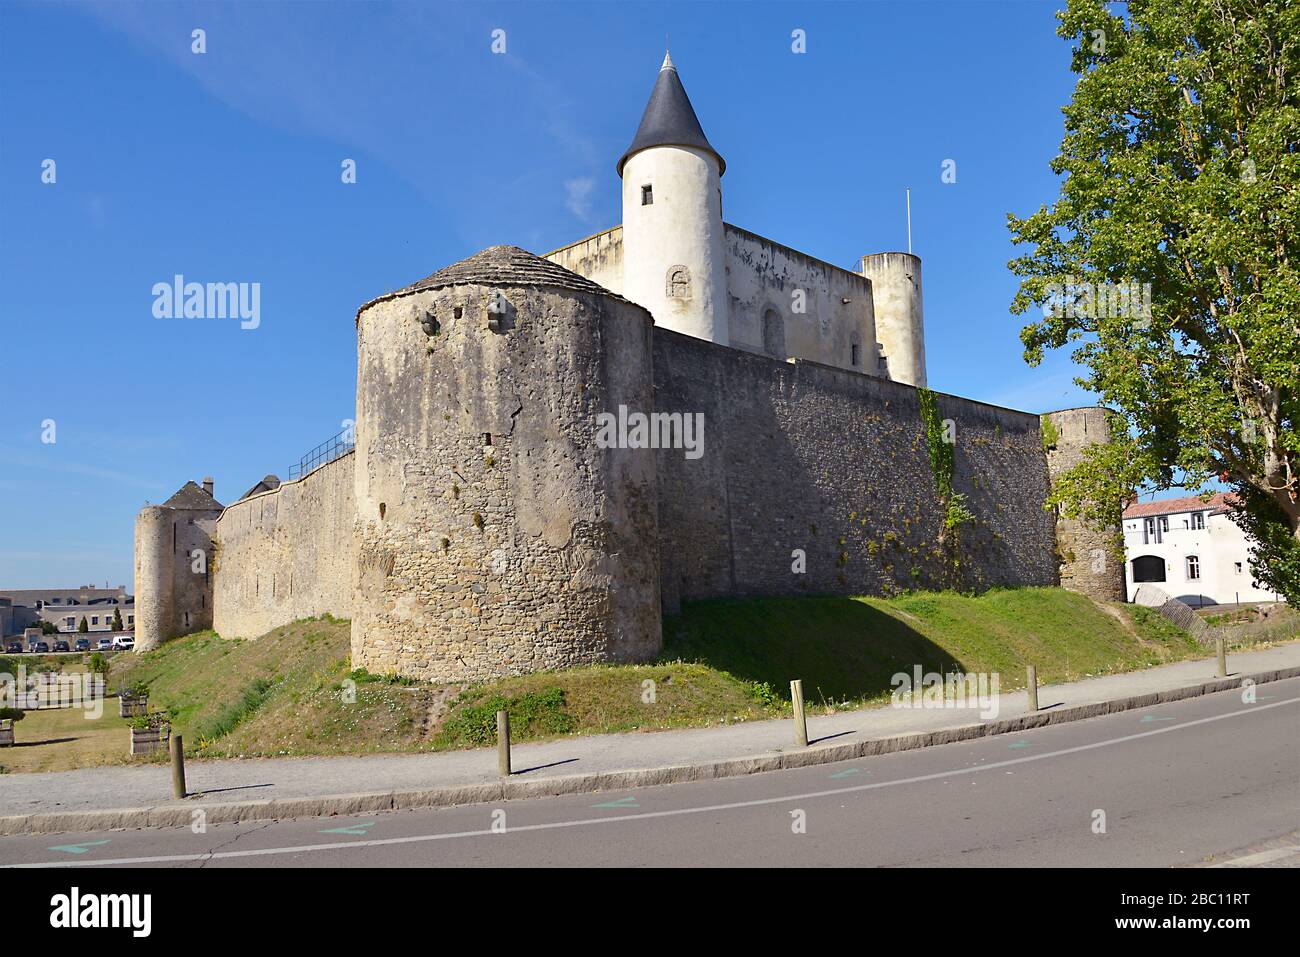 Medieval castle of Noirmoutier en l’Ile in Pays de la Loire region in western France Stock Photo